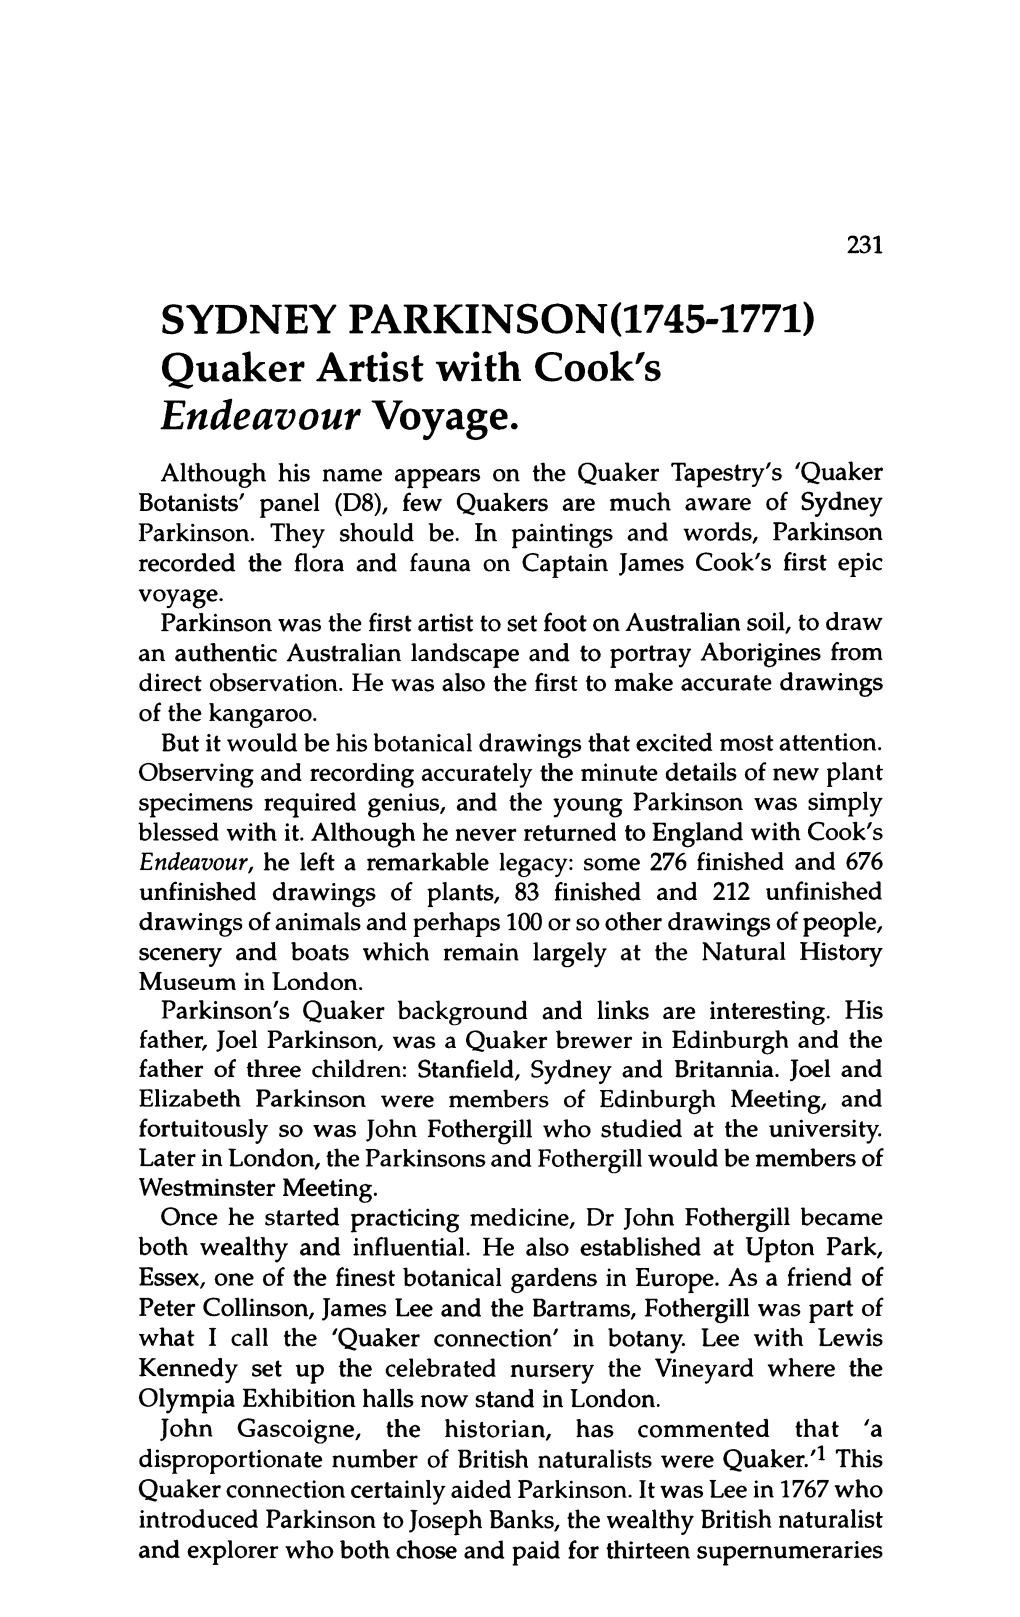 SYDNEY PARKINSON(1745-1771) Quaker Artist with Cook's Endeavour Voyage